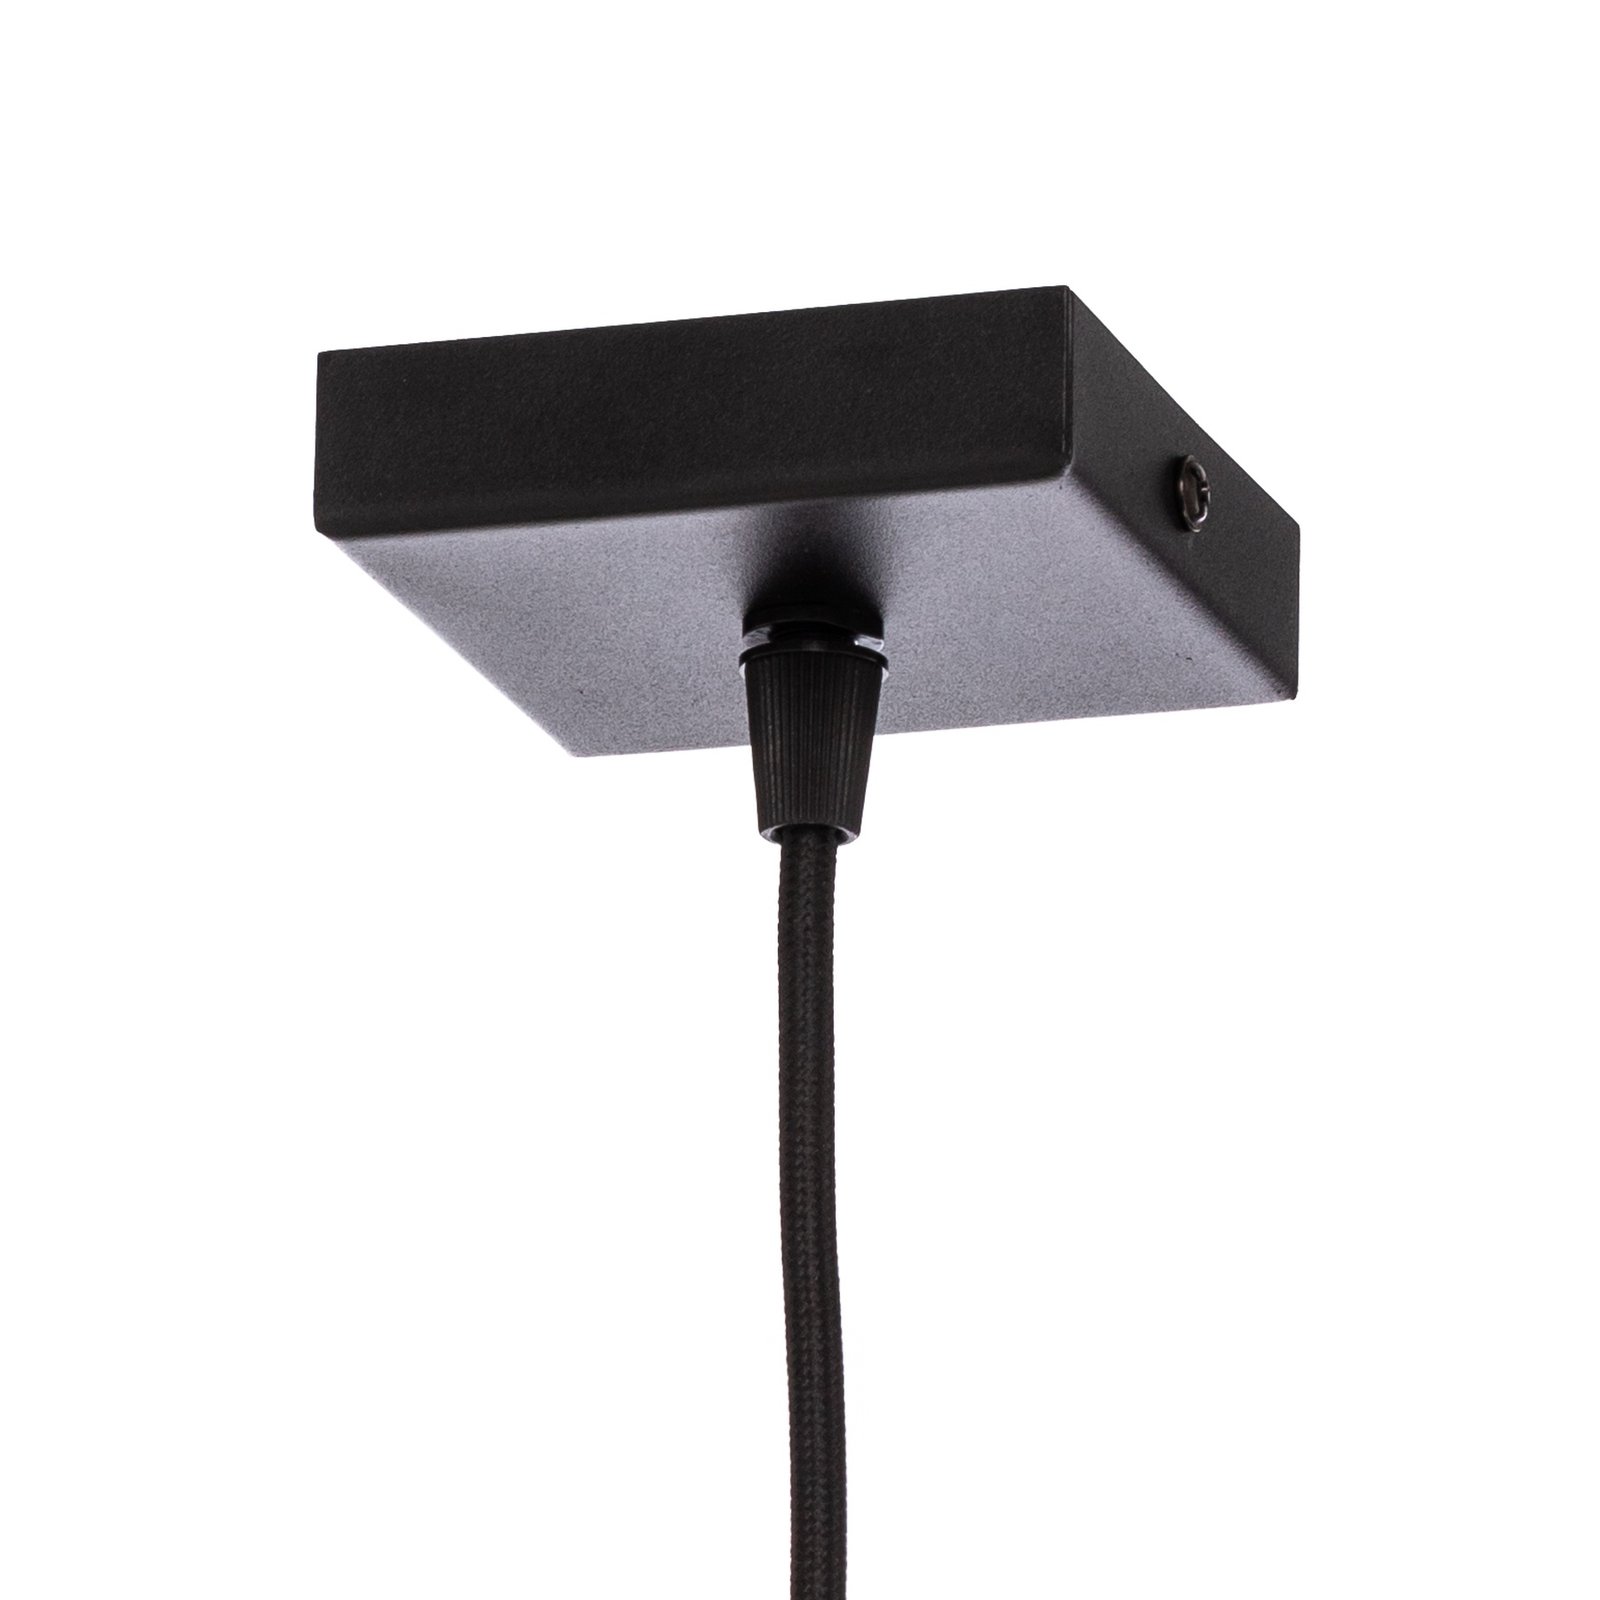 Euluna Thalassa hanglamp 1-lamp G9 zwart/chroom